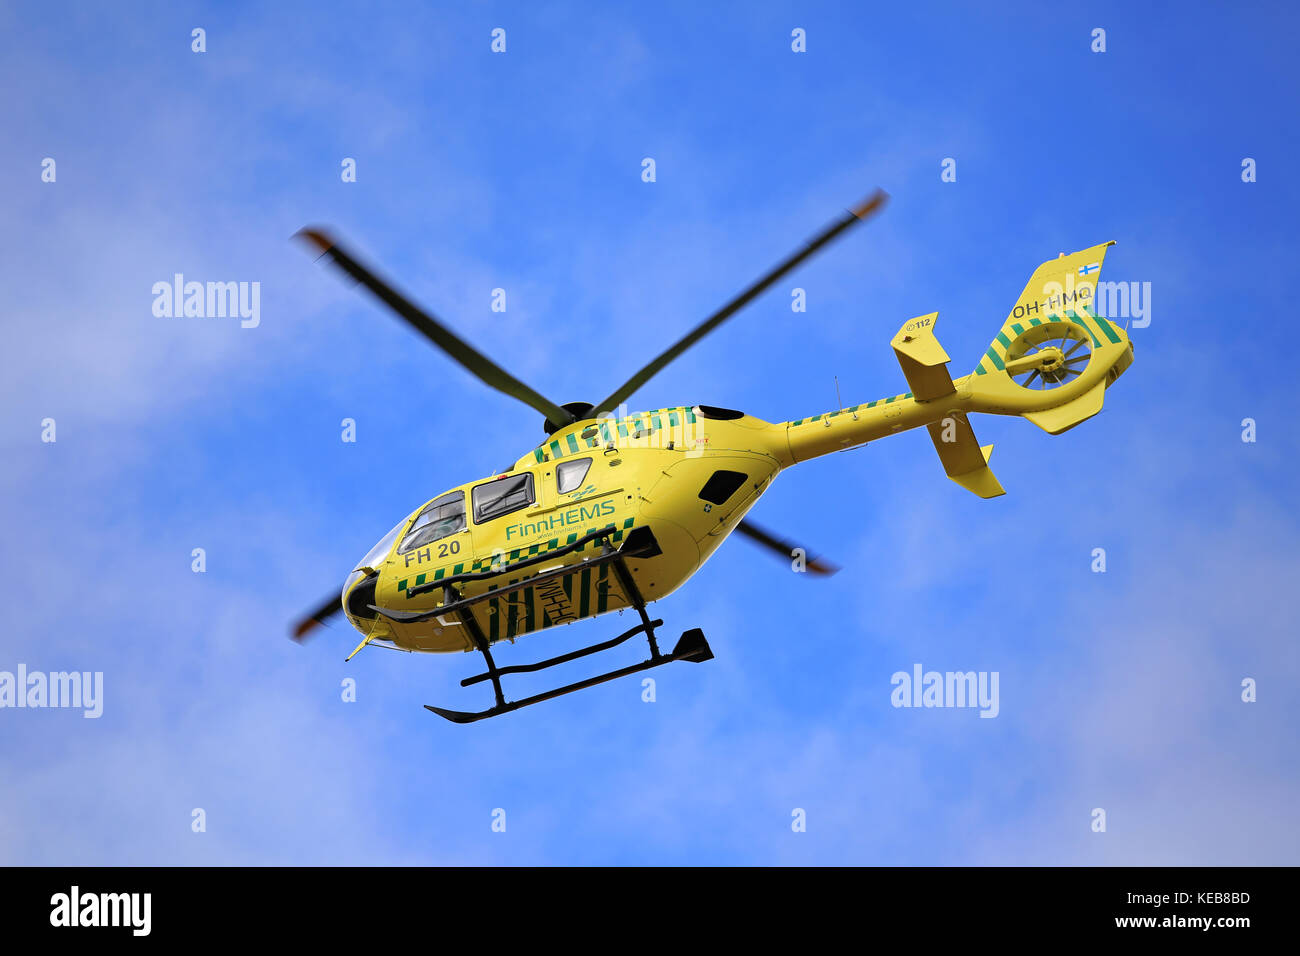 Salo, Finnland - 27. März 2016: finnhems medizinischen Hubschrauber im Flug. finnhems ist die Abkürzung für finnische Helicopter Emergency Medical Services. Stockfoto